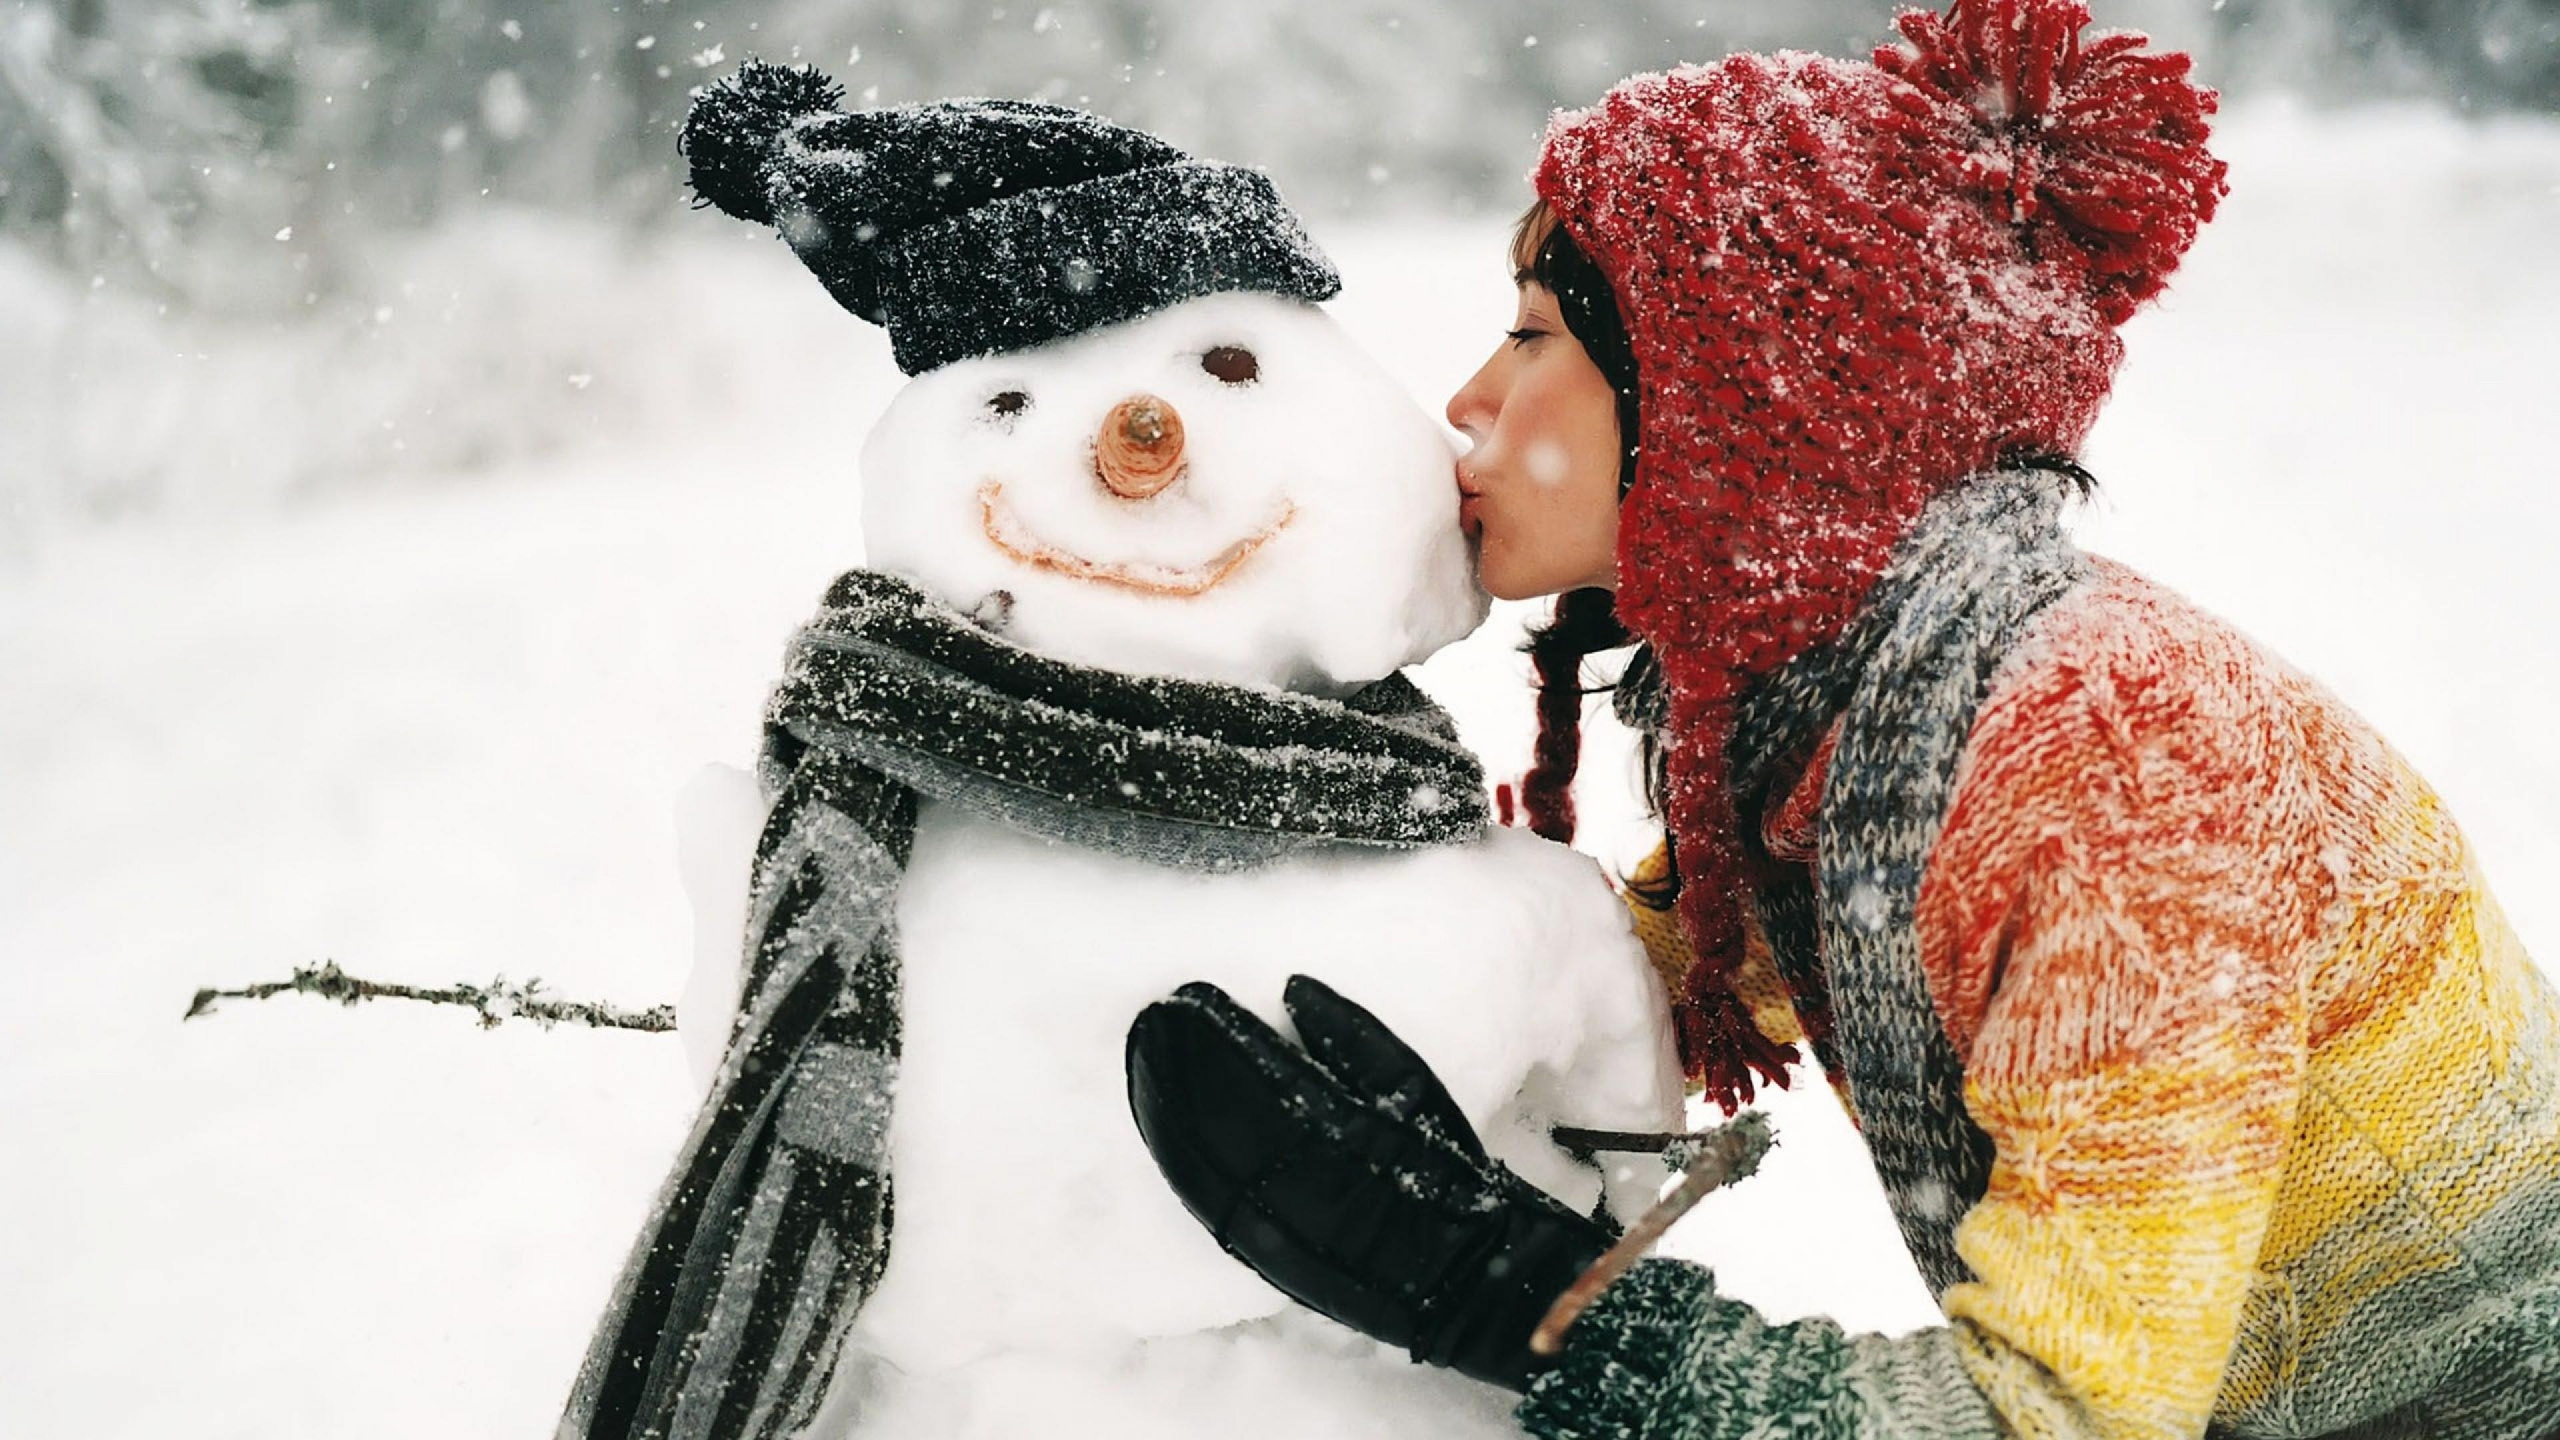 雪人, 冬天, 女孩, 圣诞节, 圣诞节那天 壁纸 2560x1440 允许